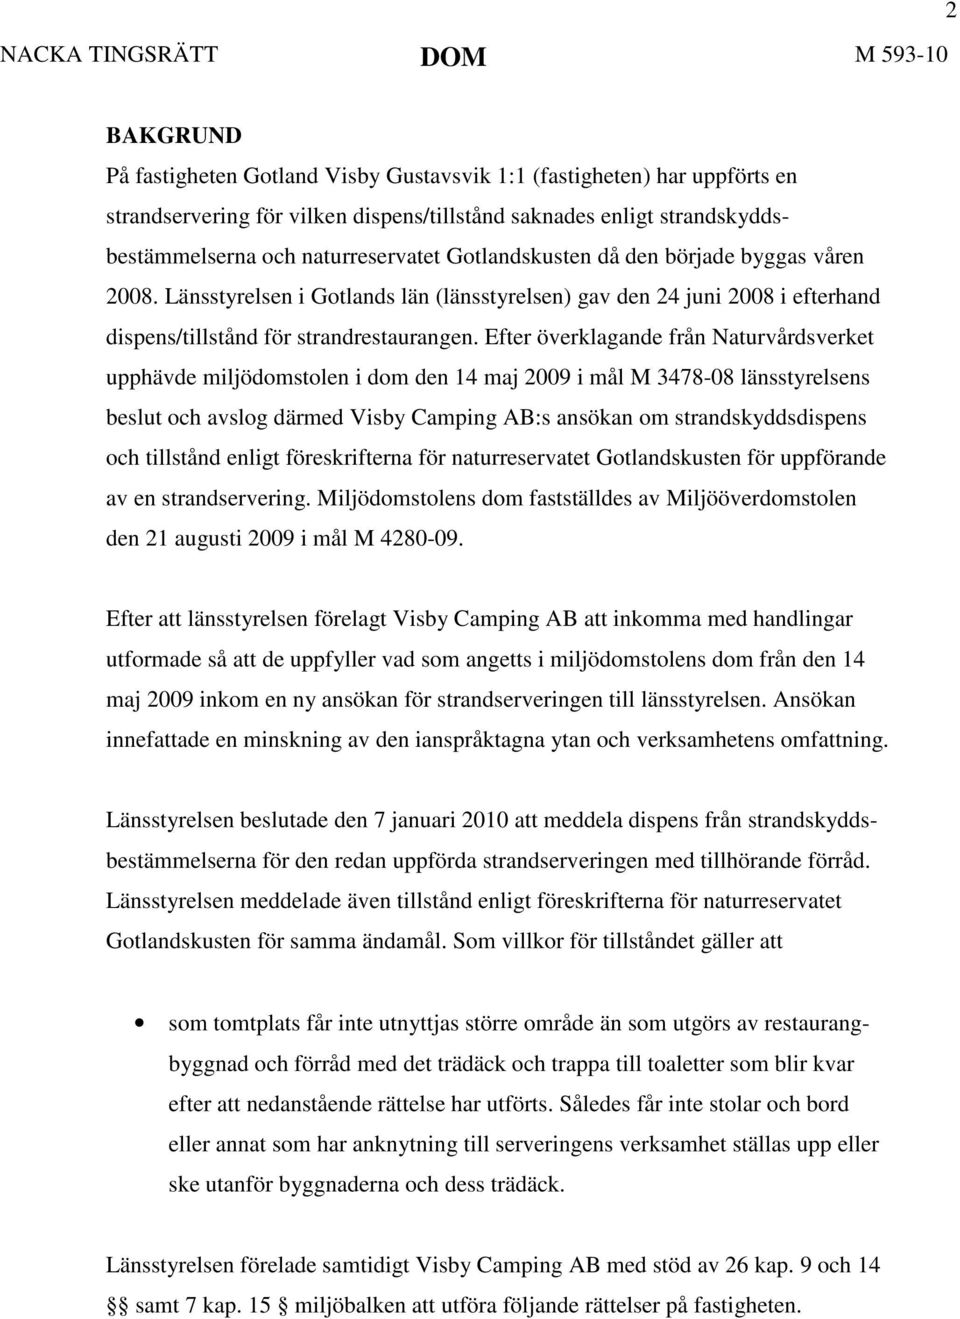 Efter överklagande från Naturvårdsverket upphävde miljödomstolen i dom den 14 maj 2009 i mål M 3478-08 länsstyrelsens beslut och avslog därmed Visby Camping AB:s ansökan om strandskyddsdispens och